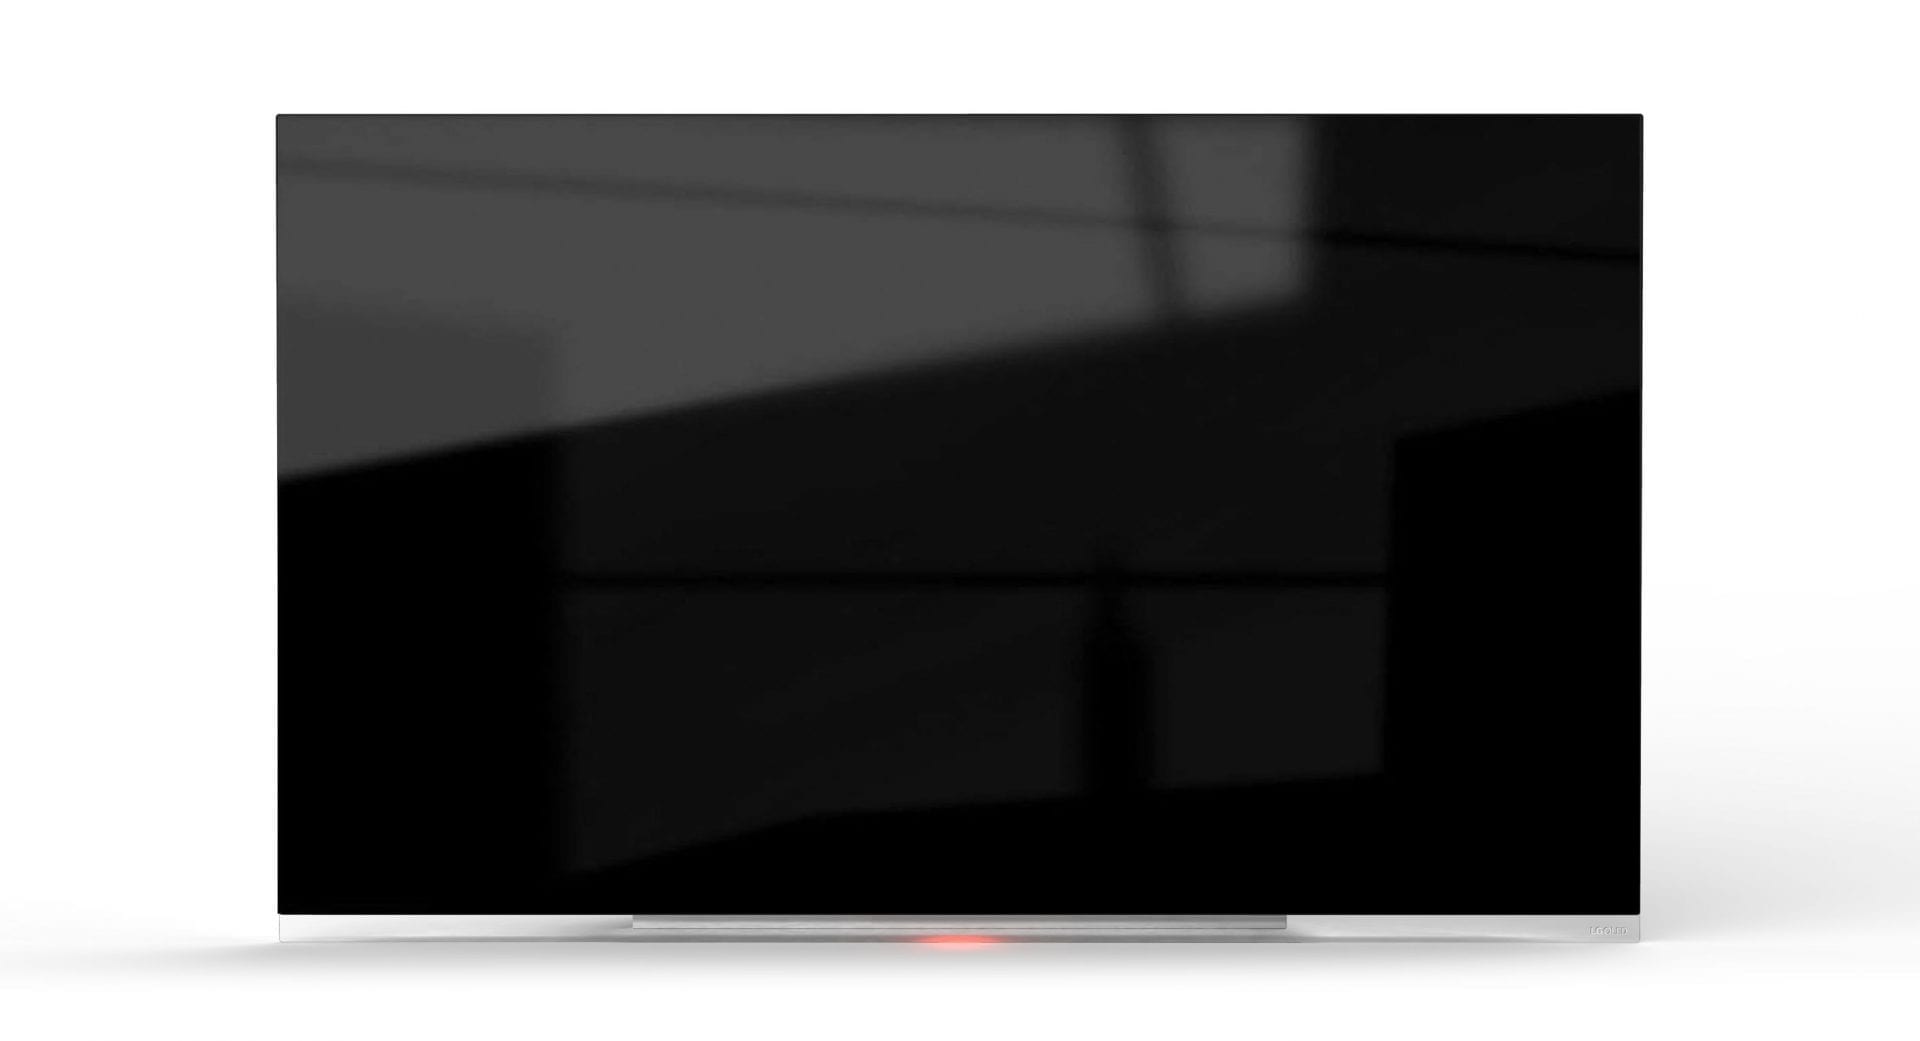 LG E9 Vs Sony AG9 2019 OLED TV